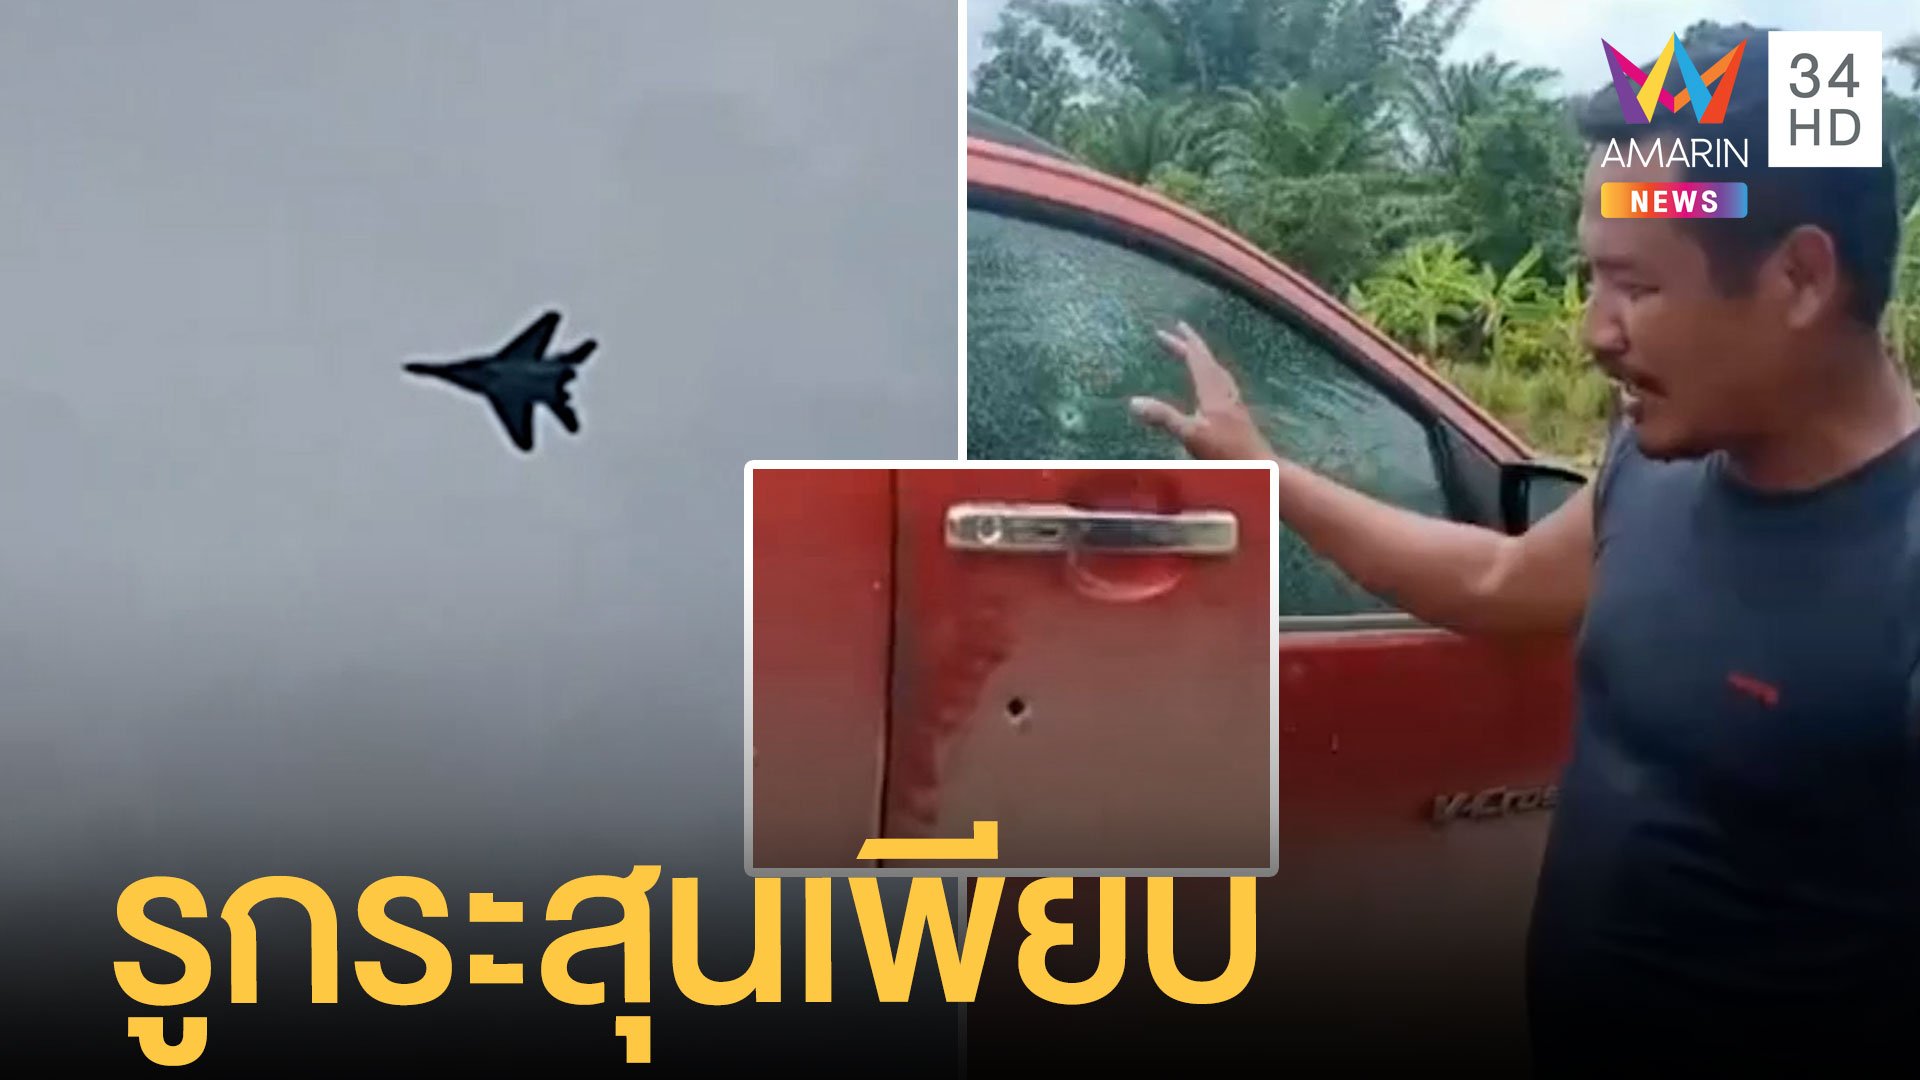 เครื่องบินพม่าบินล้ำน่านฟ้าไทย ยิงถล่มชนกลุ่มน้อย หนุ่มงงกระสุนเจาะรถเพียบ | ข่าวอรุณอมรินทร์ | 1 ก.ค. 65 | AMARIN TVHD34